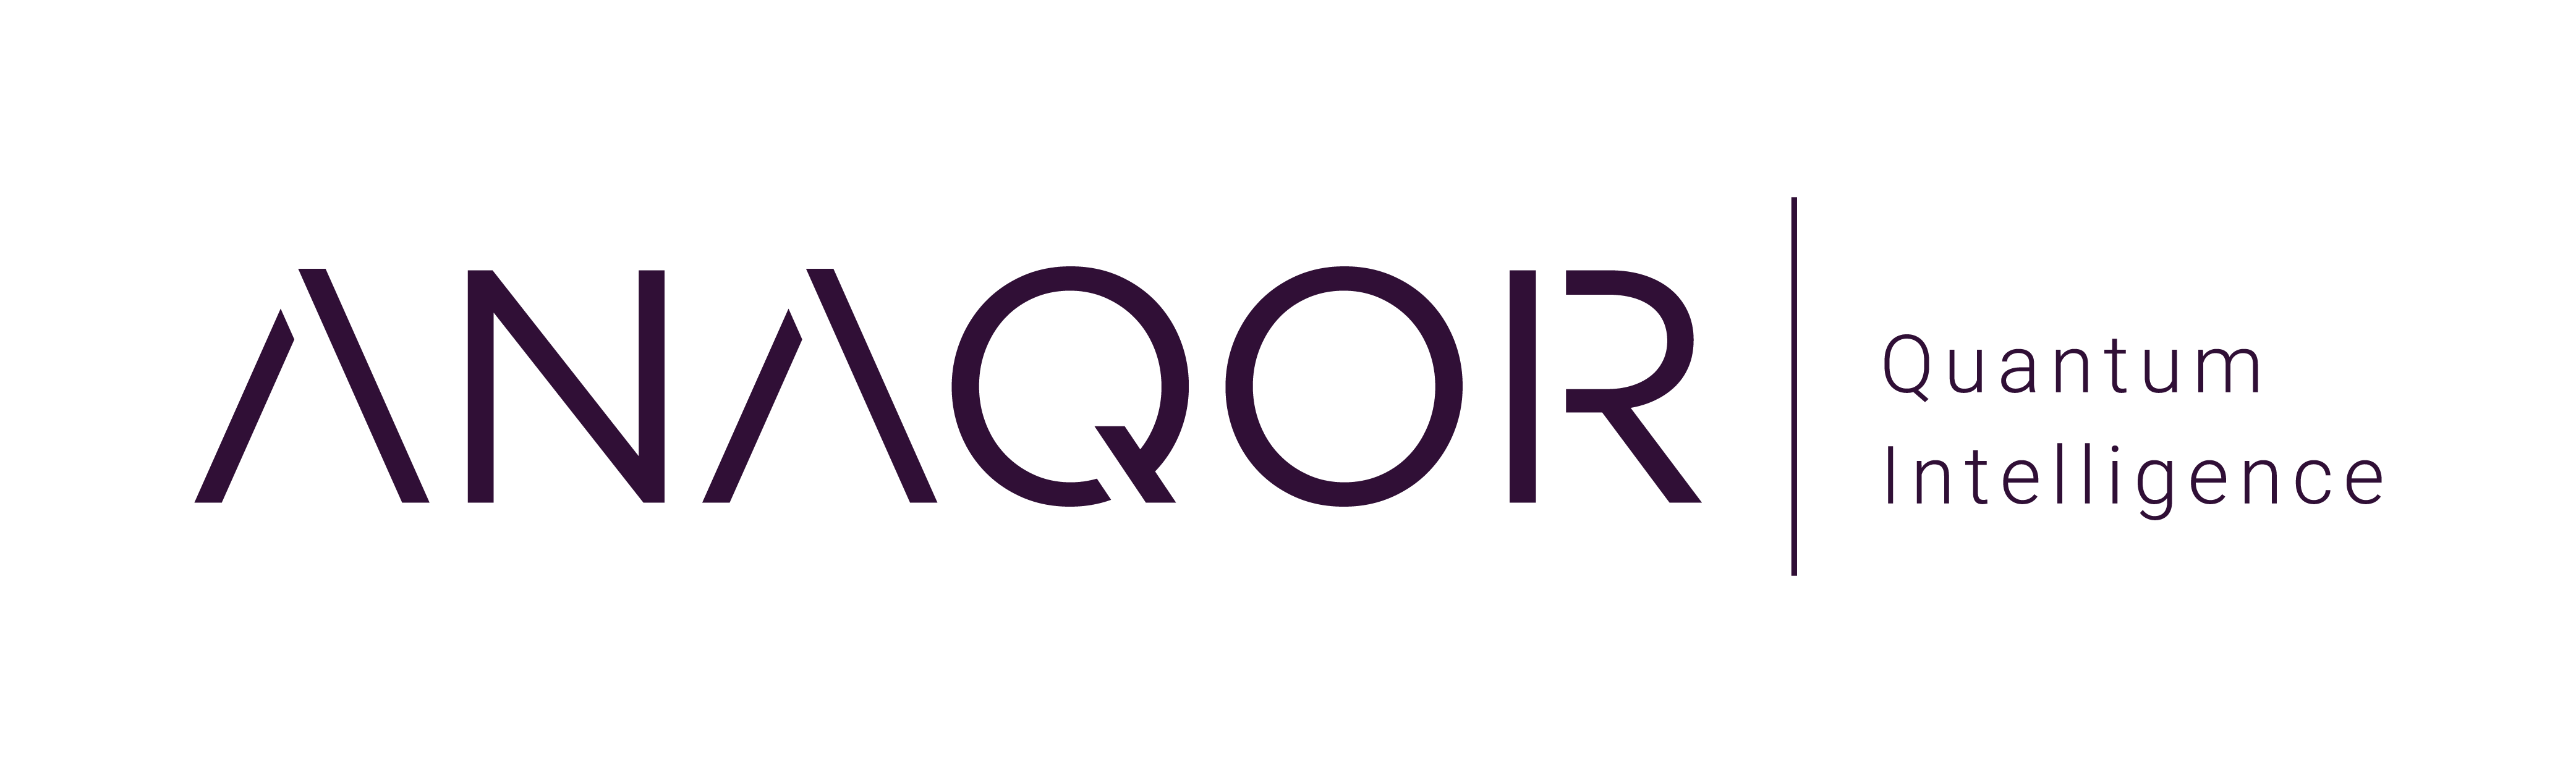 Anaqor – Unser neuer Geschäftsbereich für Quantencomputing ve ...